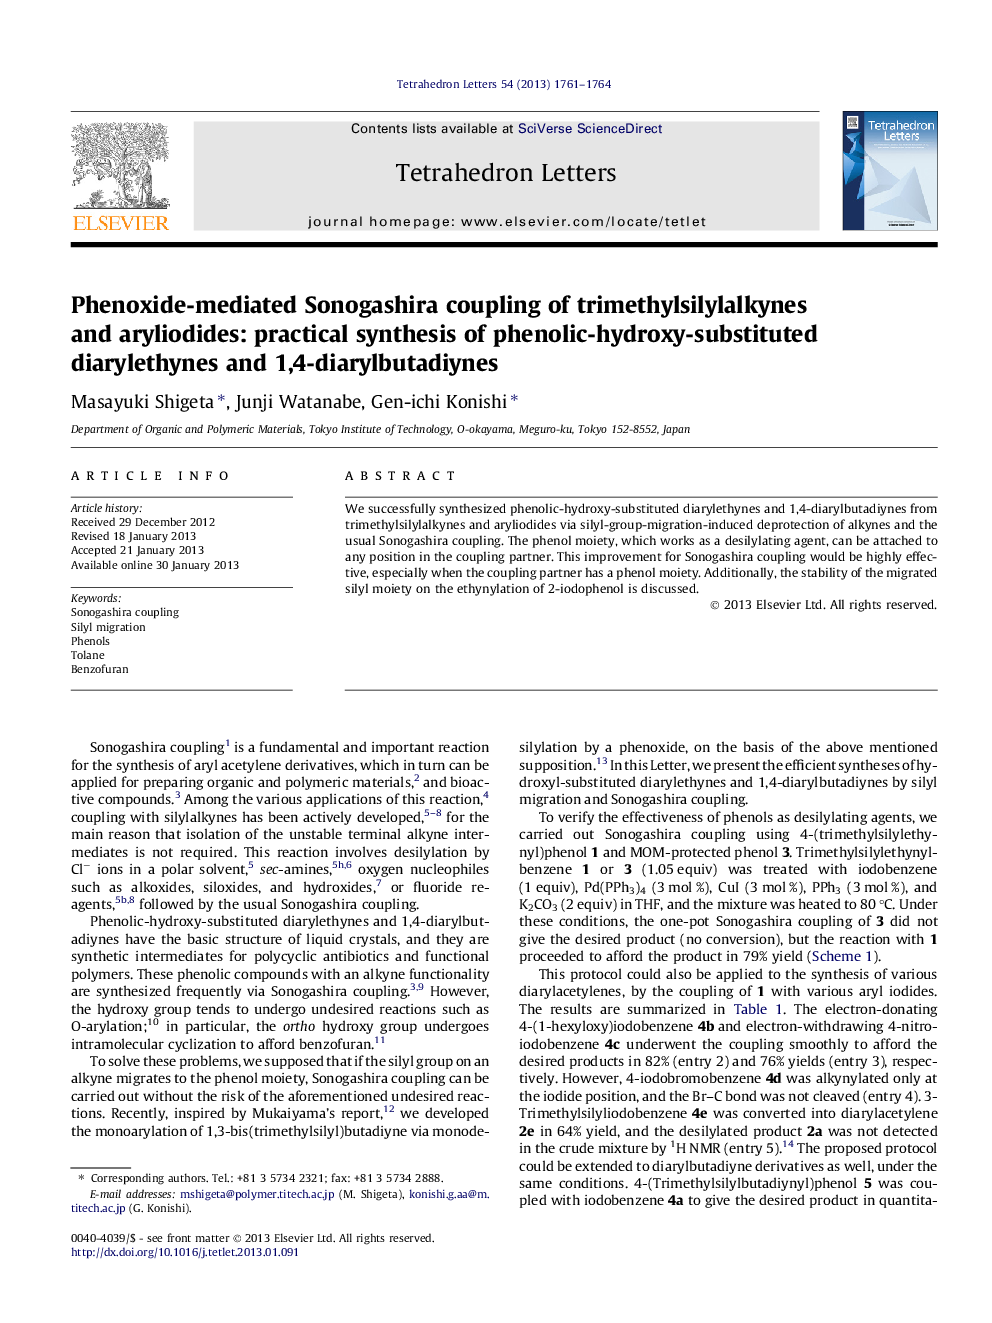 اتصال سونوگاشیرا از تریتیلیسیلیلکولین ها و آرییلودید ها به وسیله فنوکسیست: سنتز عملی دیاریلتین های فنول هیدروکسی-جایگزین و 1،4-دیاریلوبادین ها 